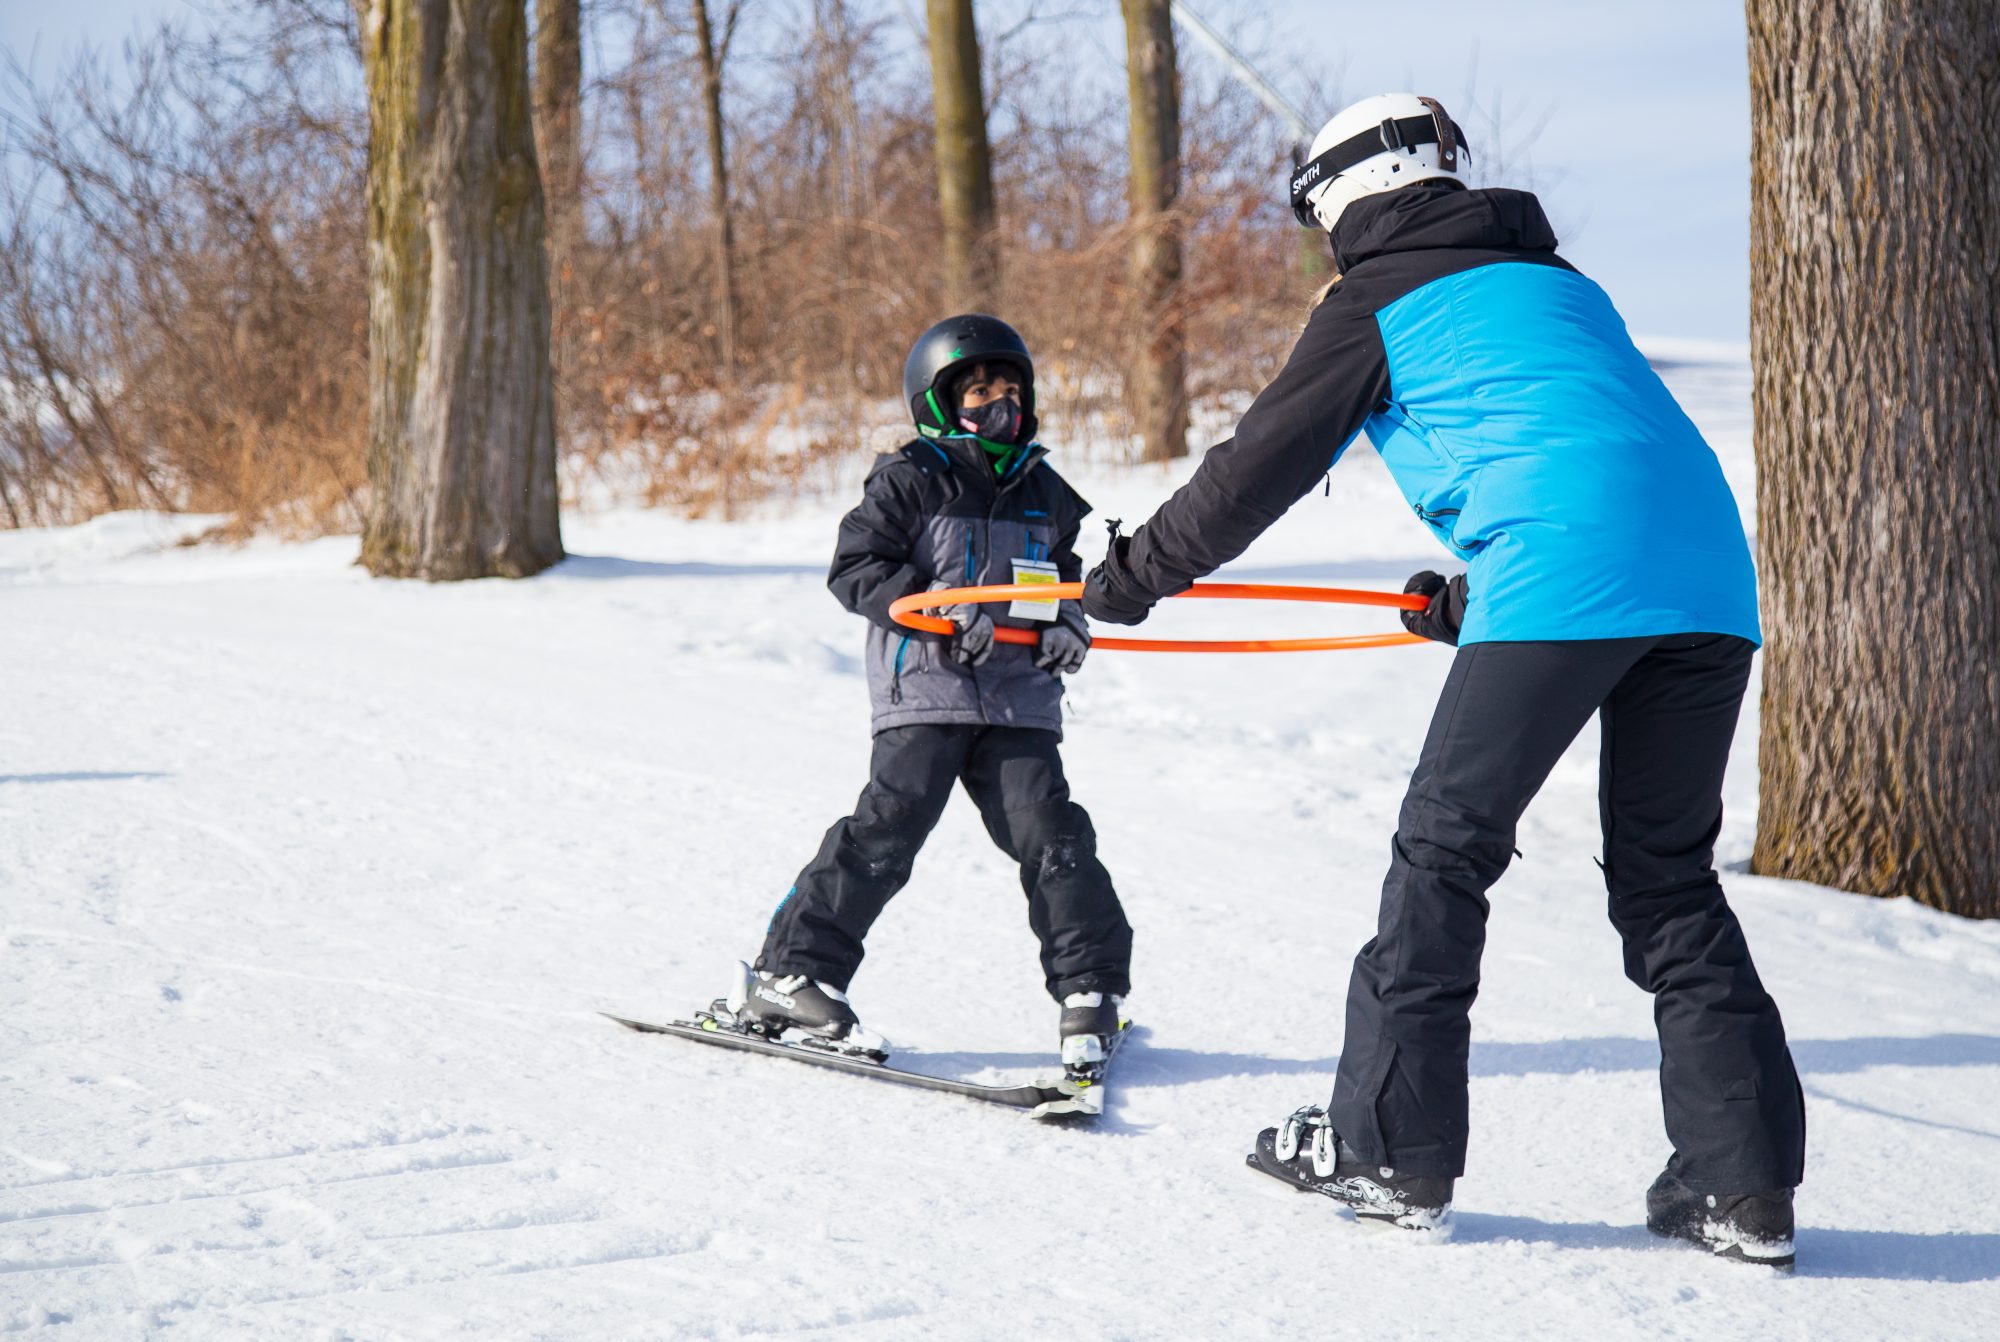 滑雪教练拉着一个年轻的孩子在滑雪板上前进